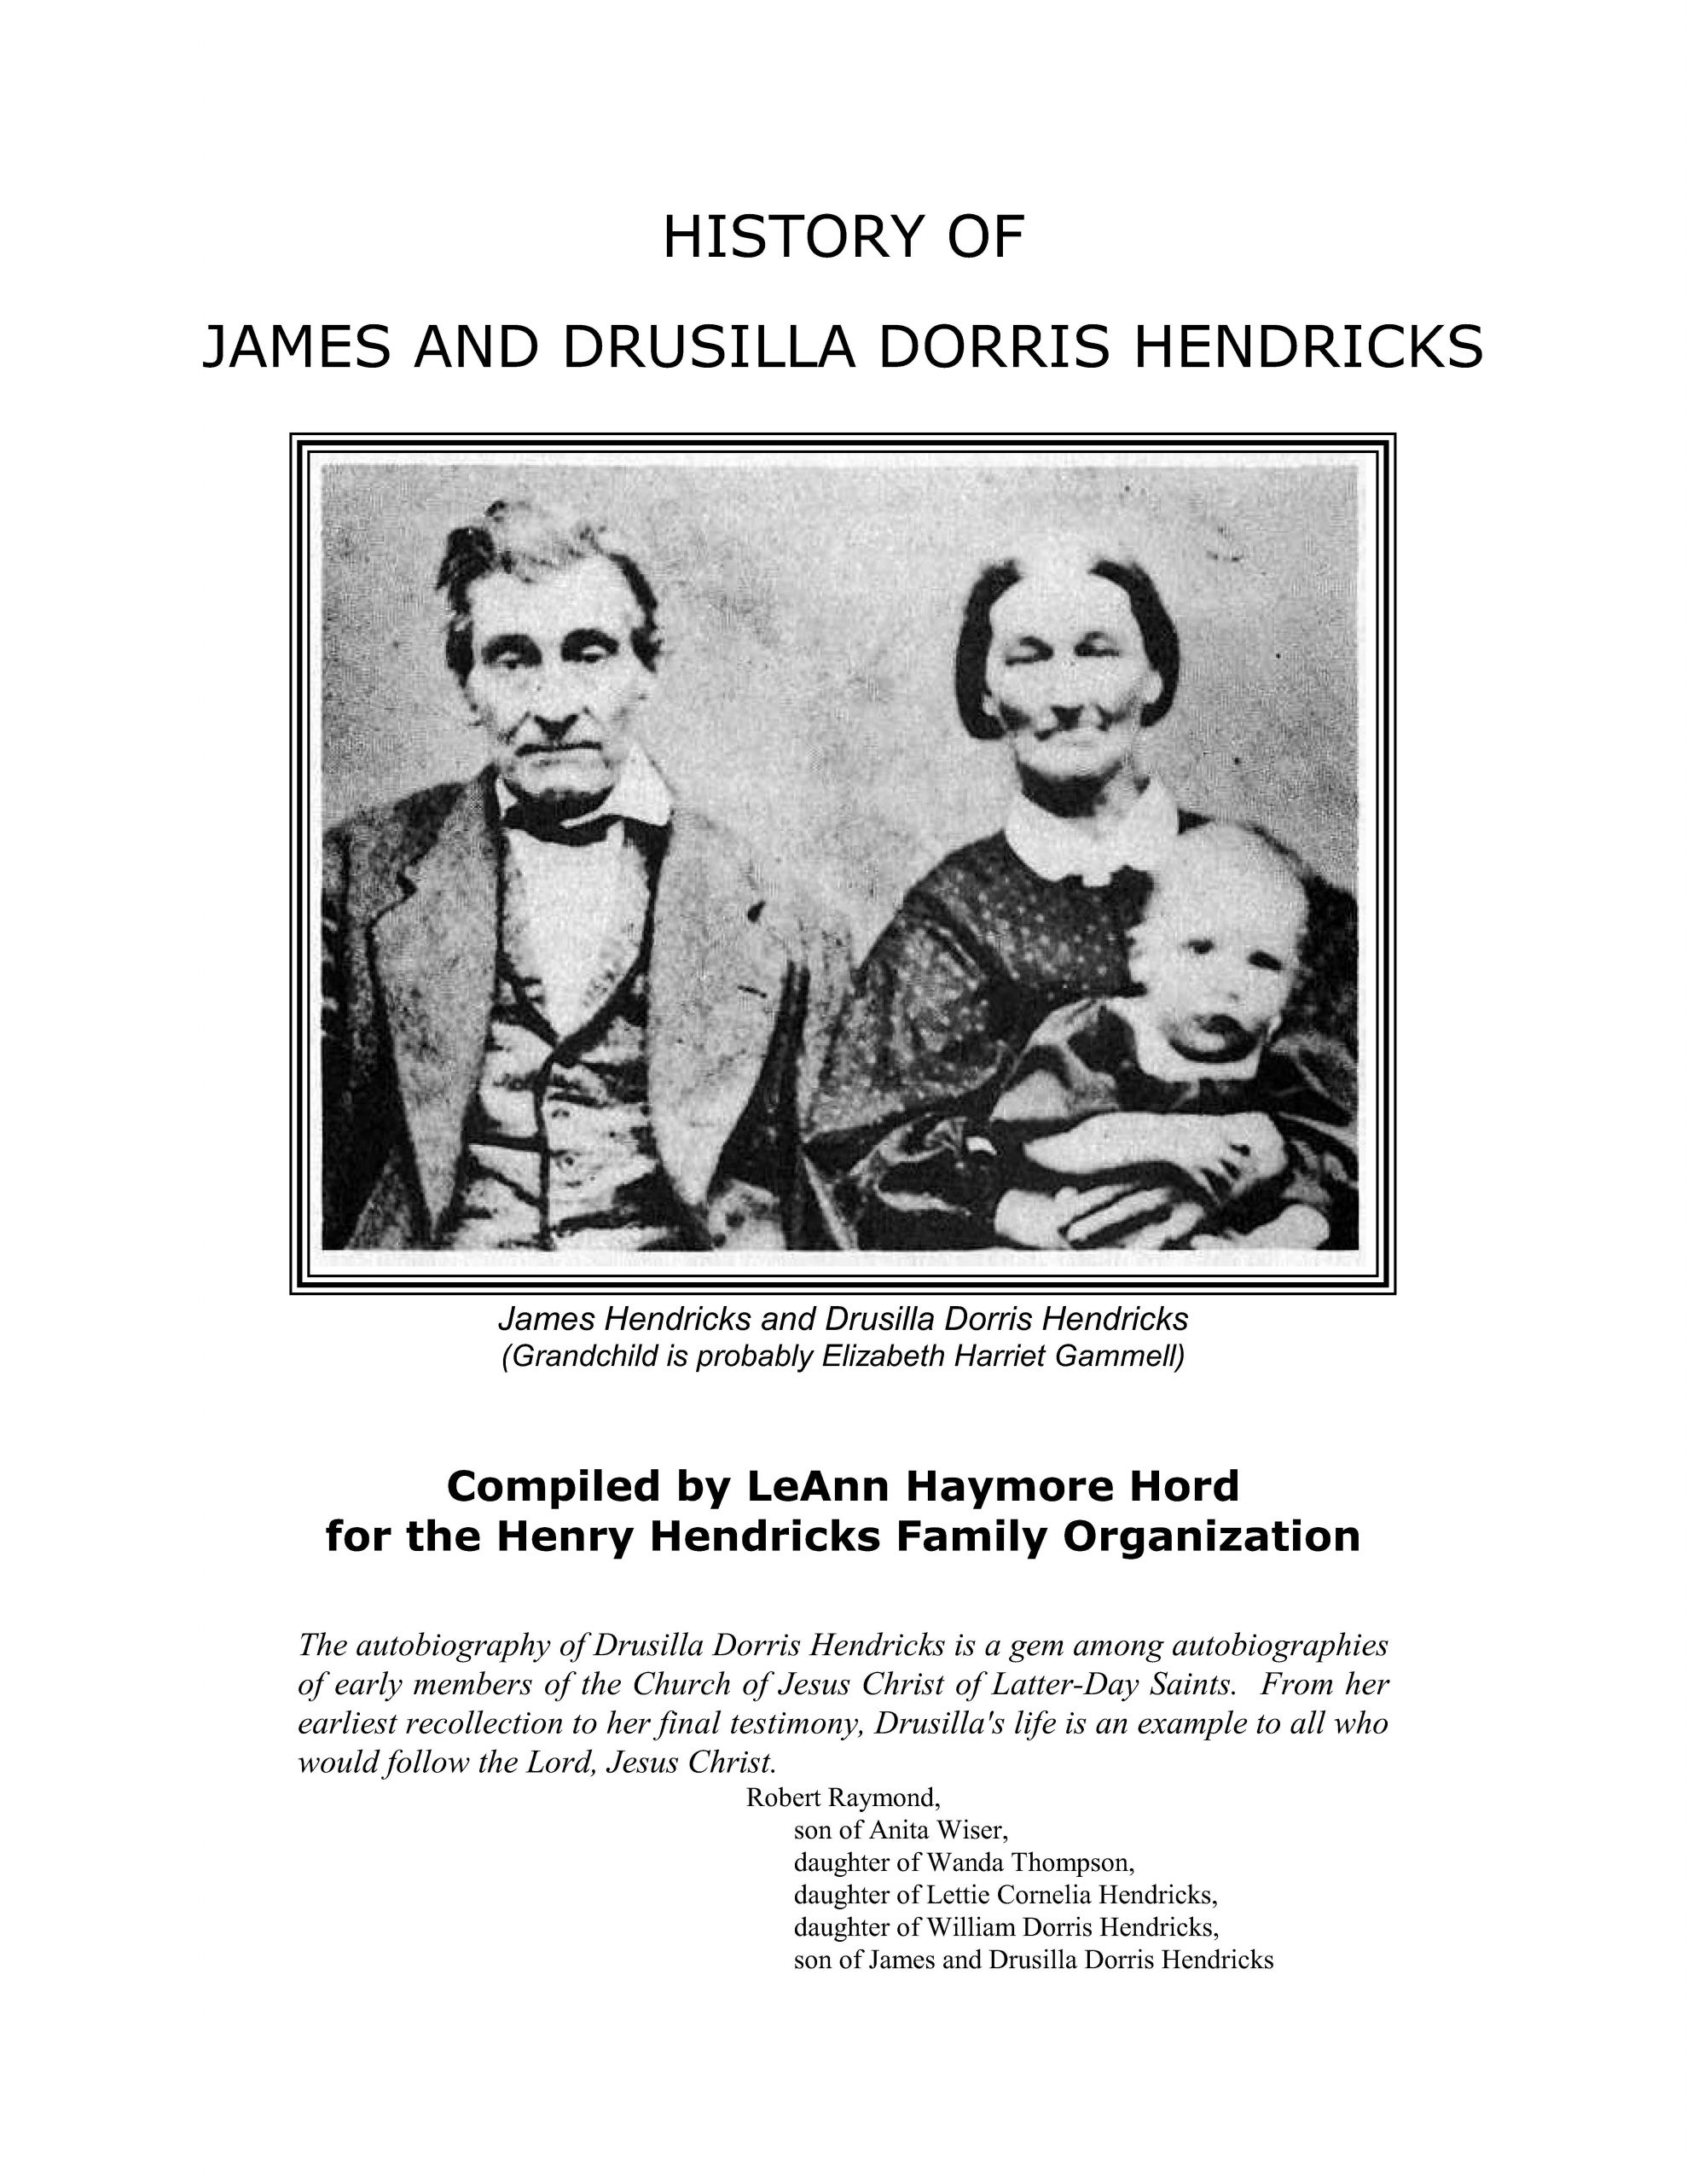 Cover of James and Drusilla Hendricks Book